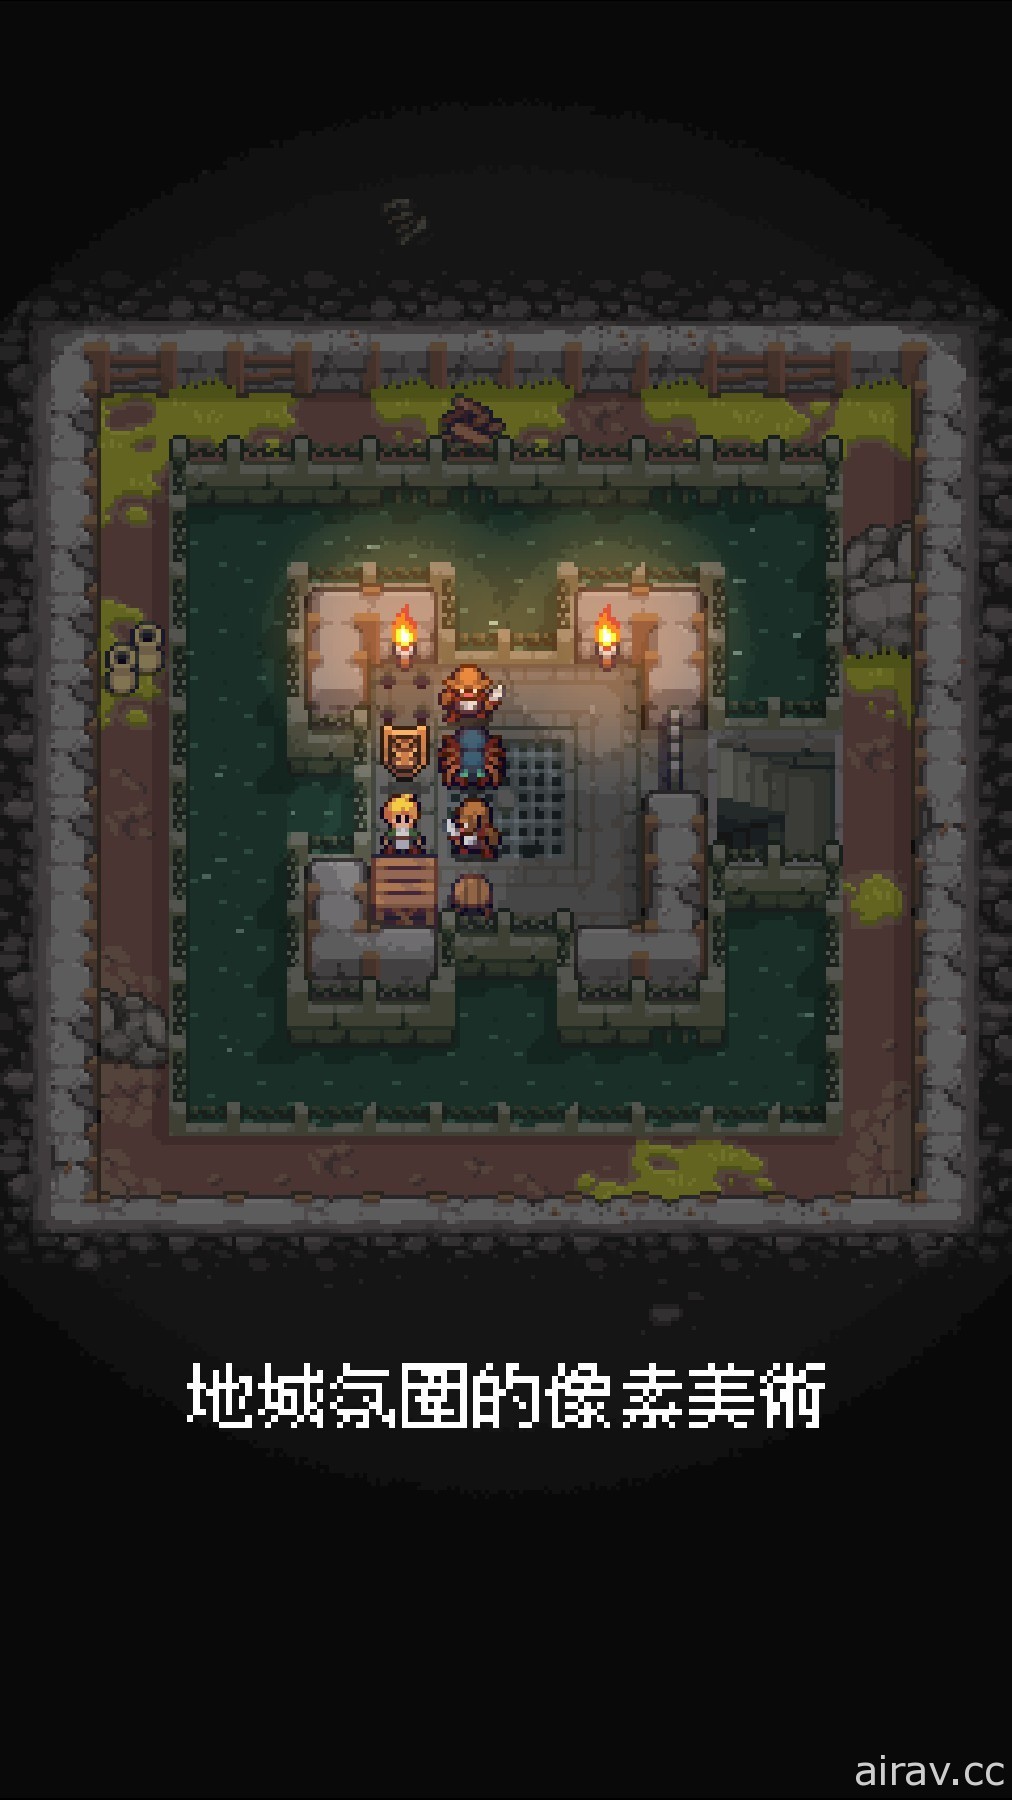 仓库番解谜游戏《地城谜踪》将于 8 月登陆 iOS 平台 即日起开放先行预购